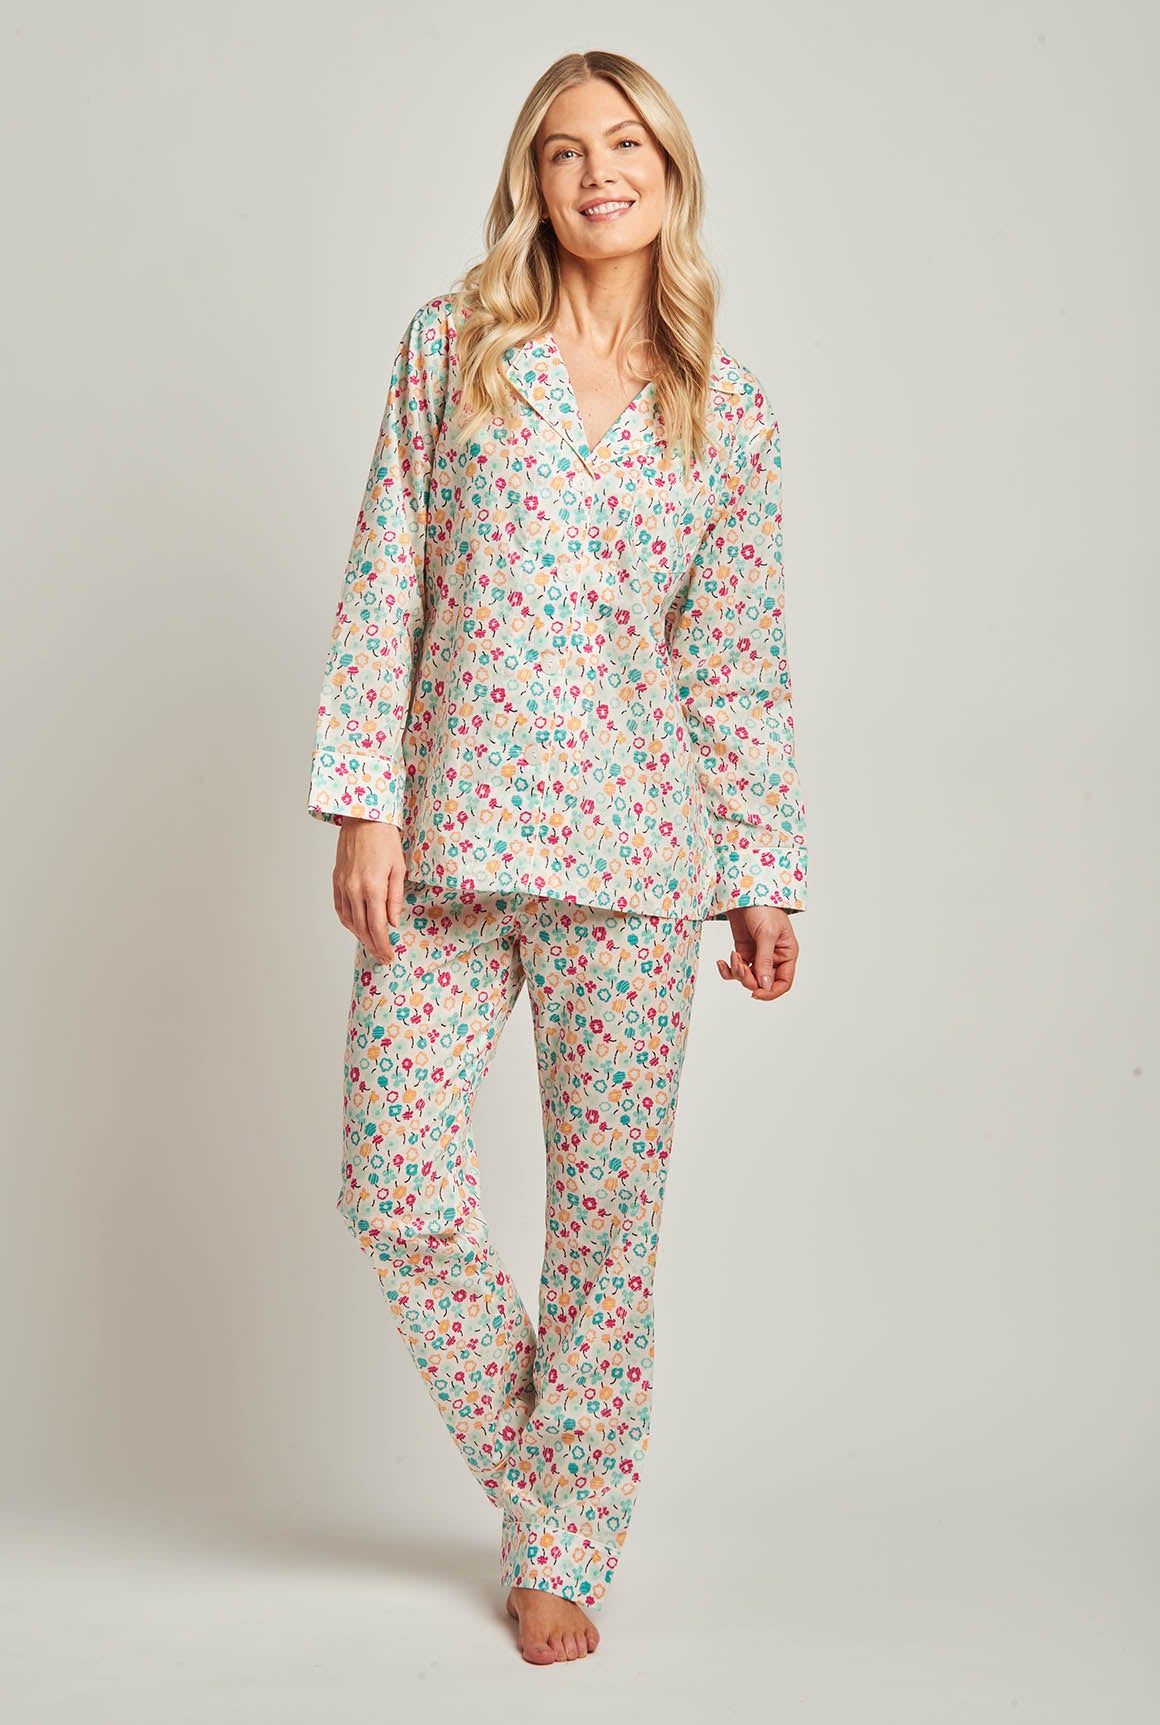 Ladies Egyptian Cotton Pyjamas, Blue & White Stripe